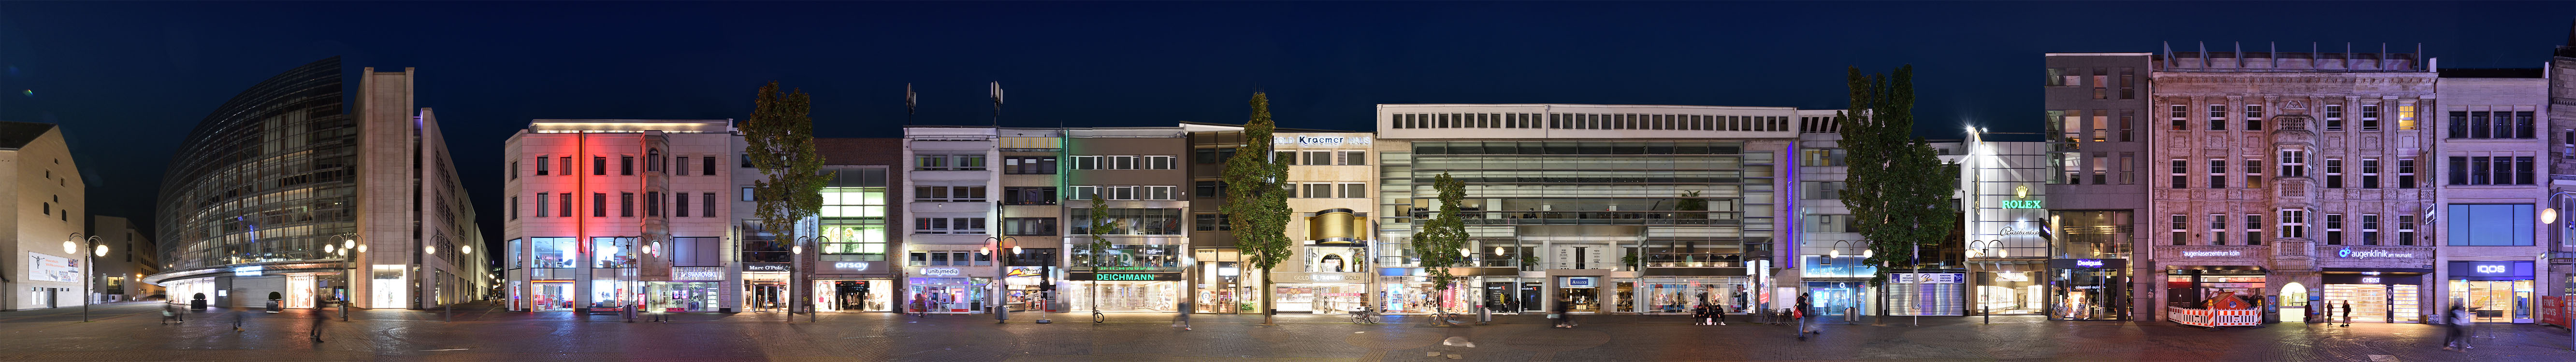 Schildergasse, Einkaufsstrasse in Köln, Shopping, NRW Westdeutschland Nachtansicht nightview